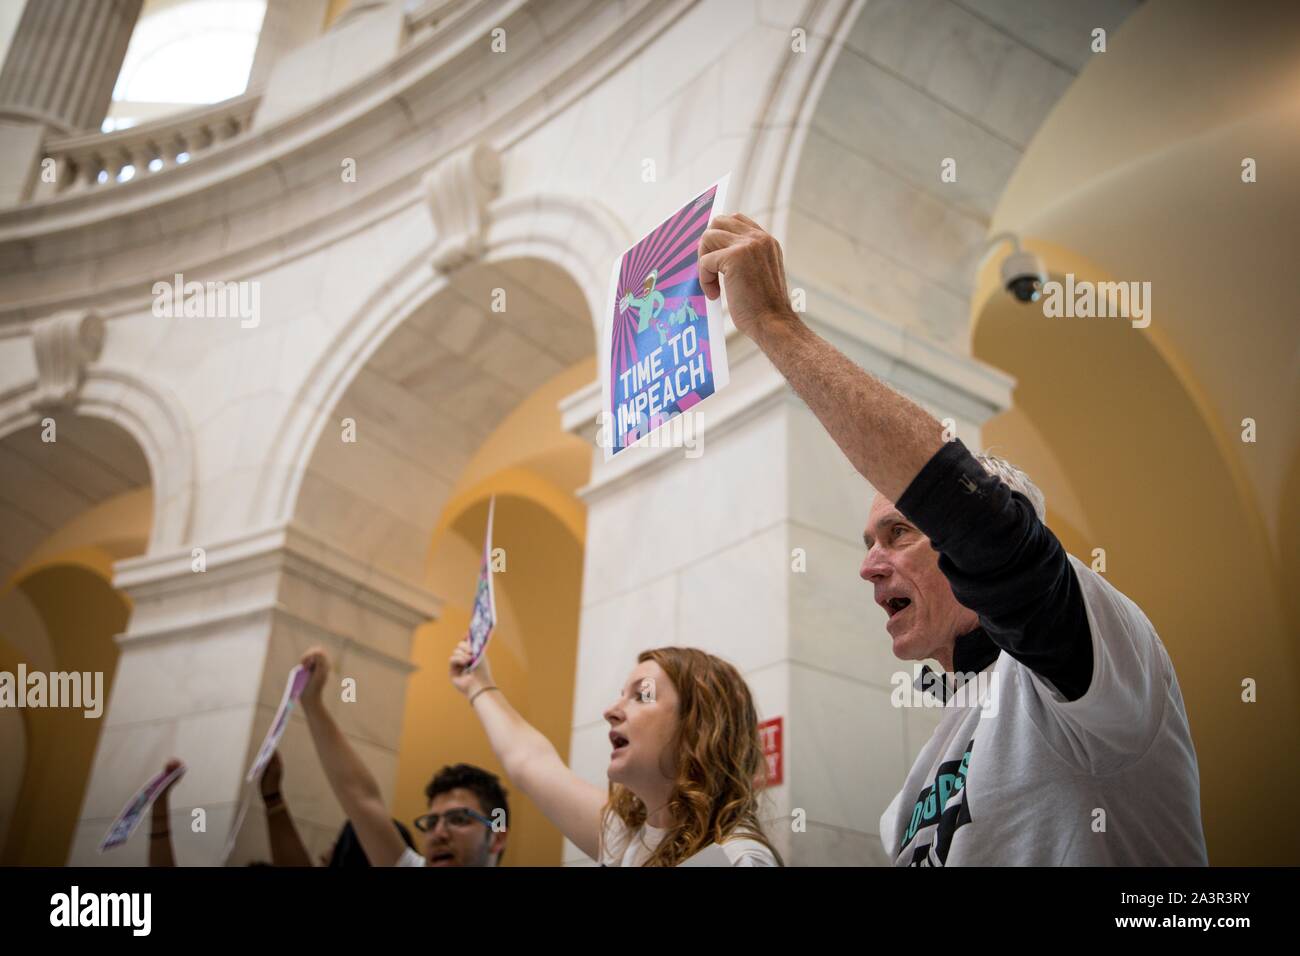 Mai 14, 2019 Mitglieder der Aktivist Gruppe durch das Volk das Capitol Rotunde im Protest der Mangel an congressionlal Aktion auf Amtsenthebung besetzen. Washington, DC, USA. Stockfoto